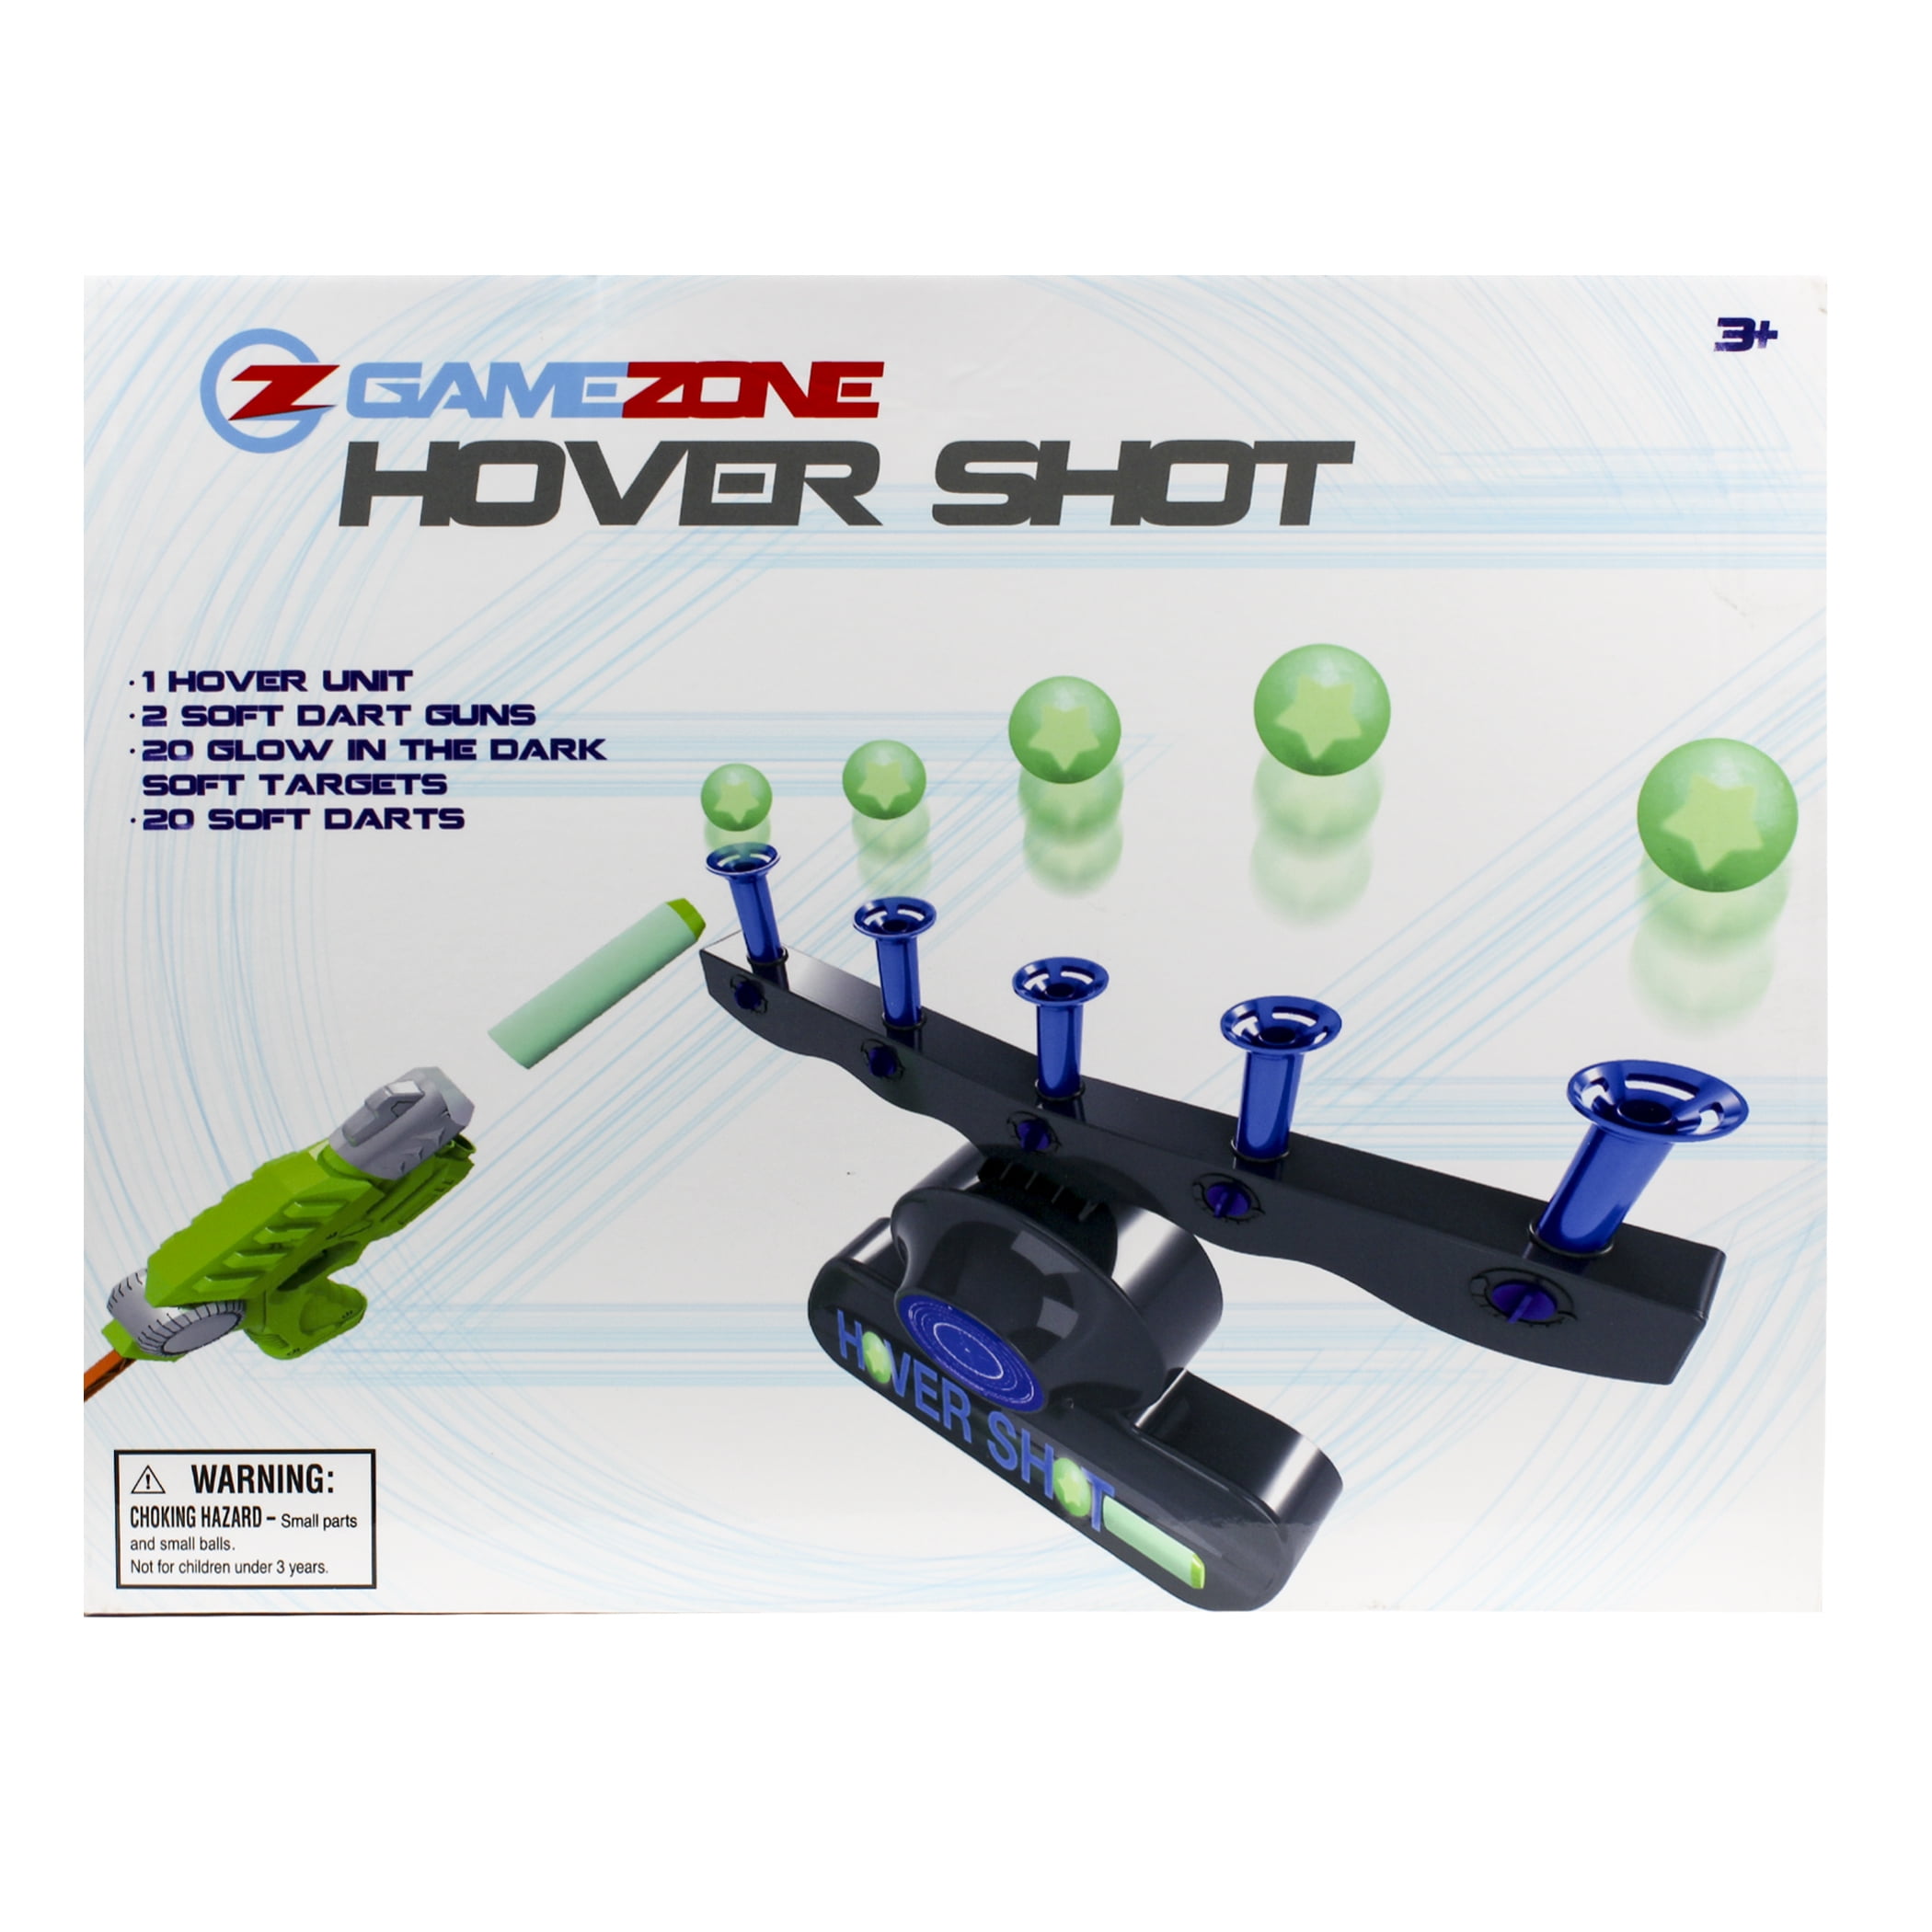 Tevo Hover Shot Soft Dart Gun Set Childrens Floating NERF Target Shooting Game for sale online 